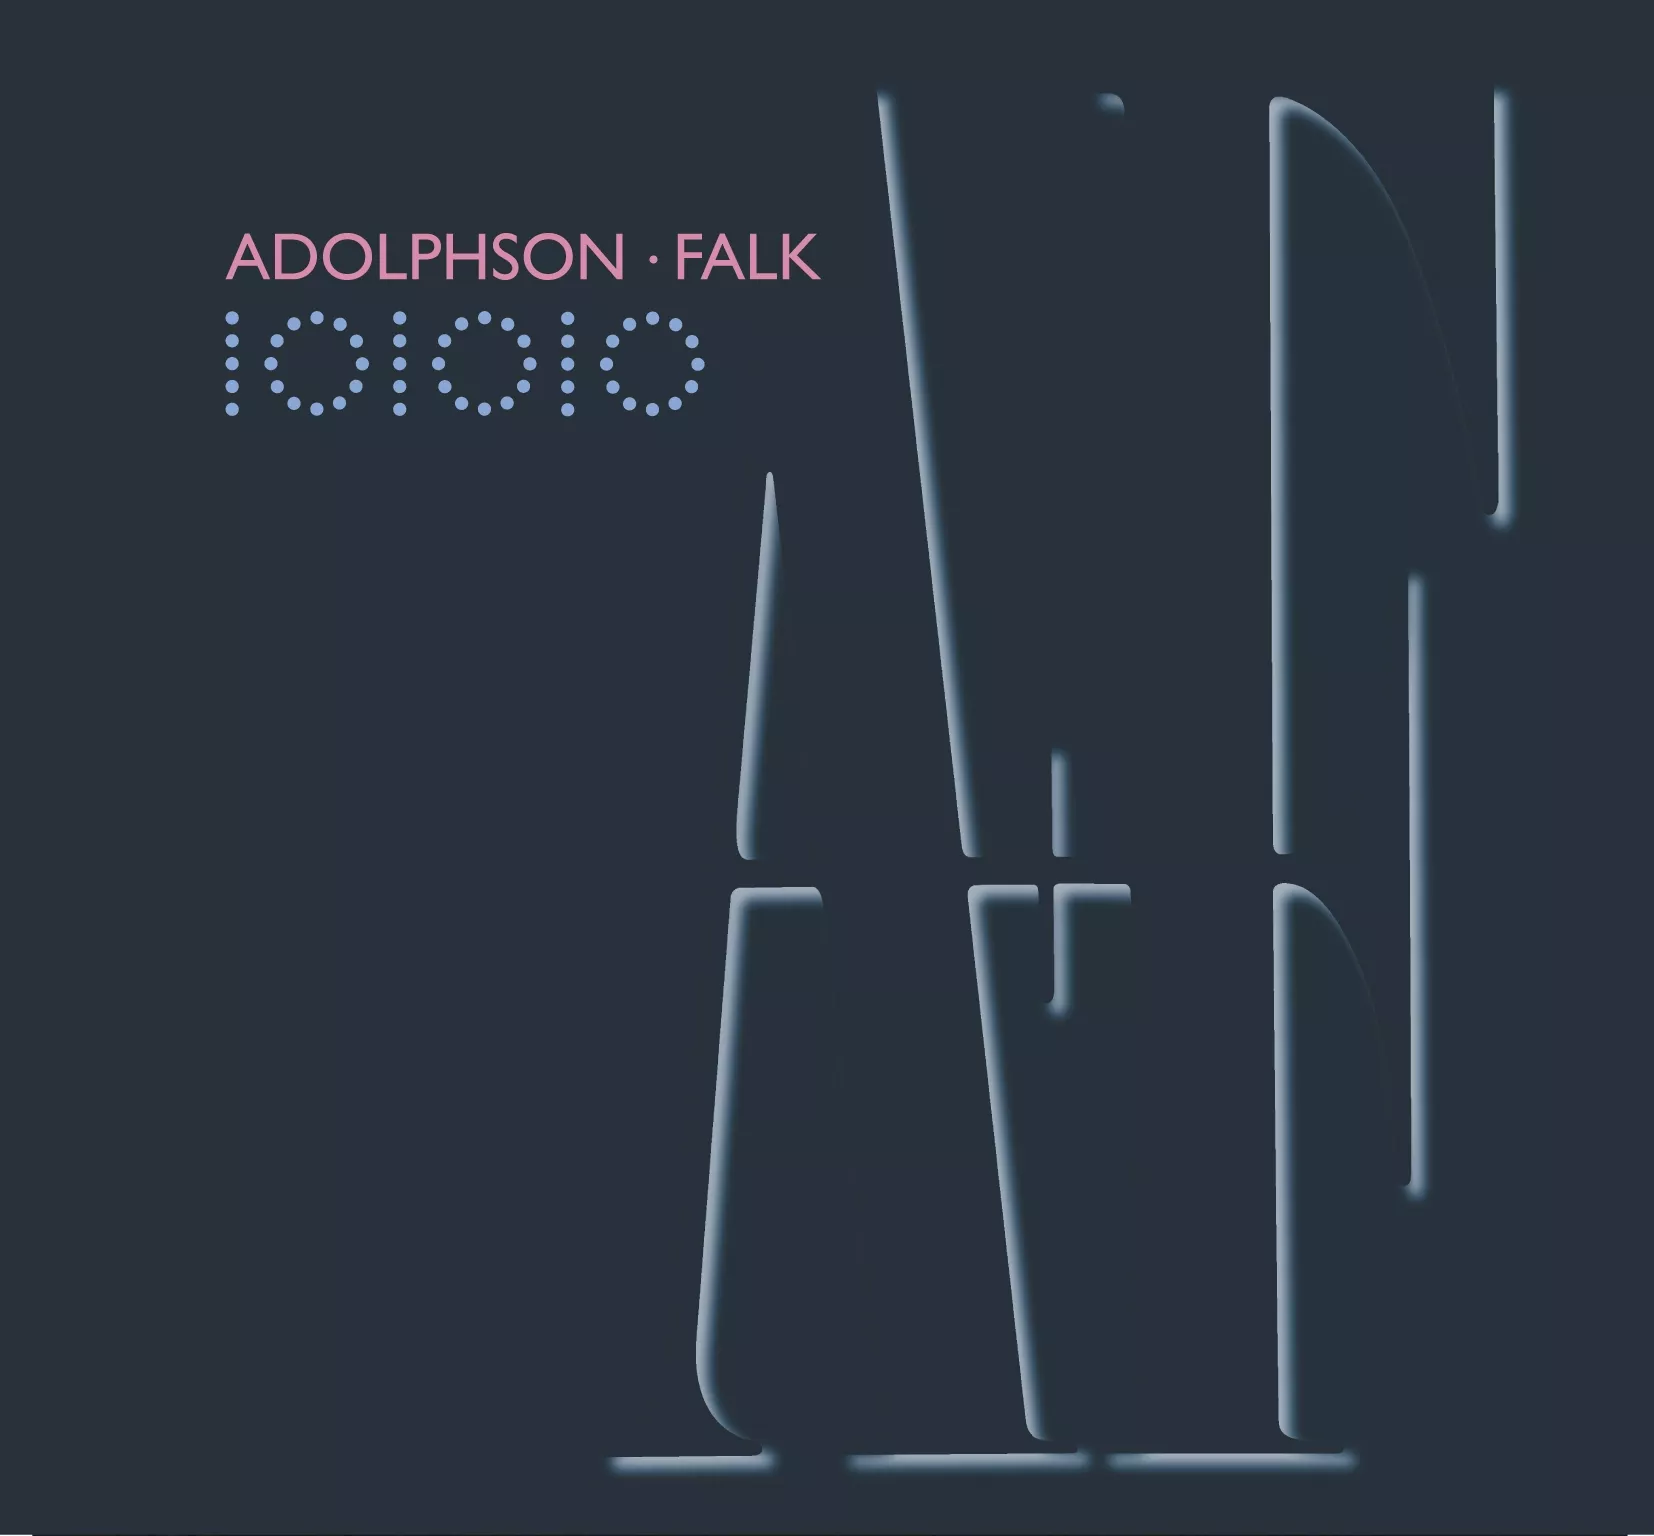 101010 - Adolphson-Falk